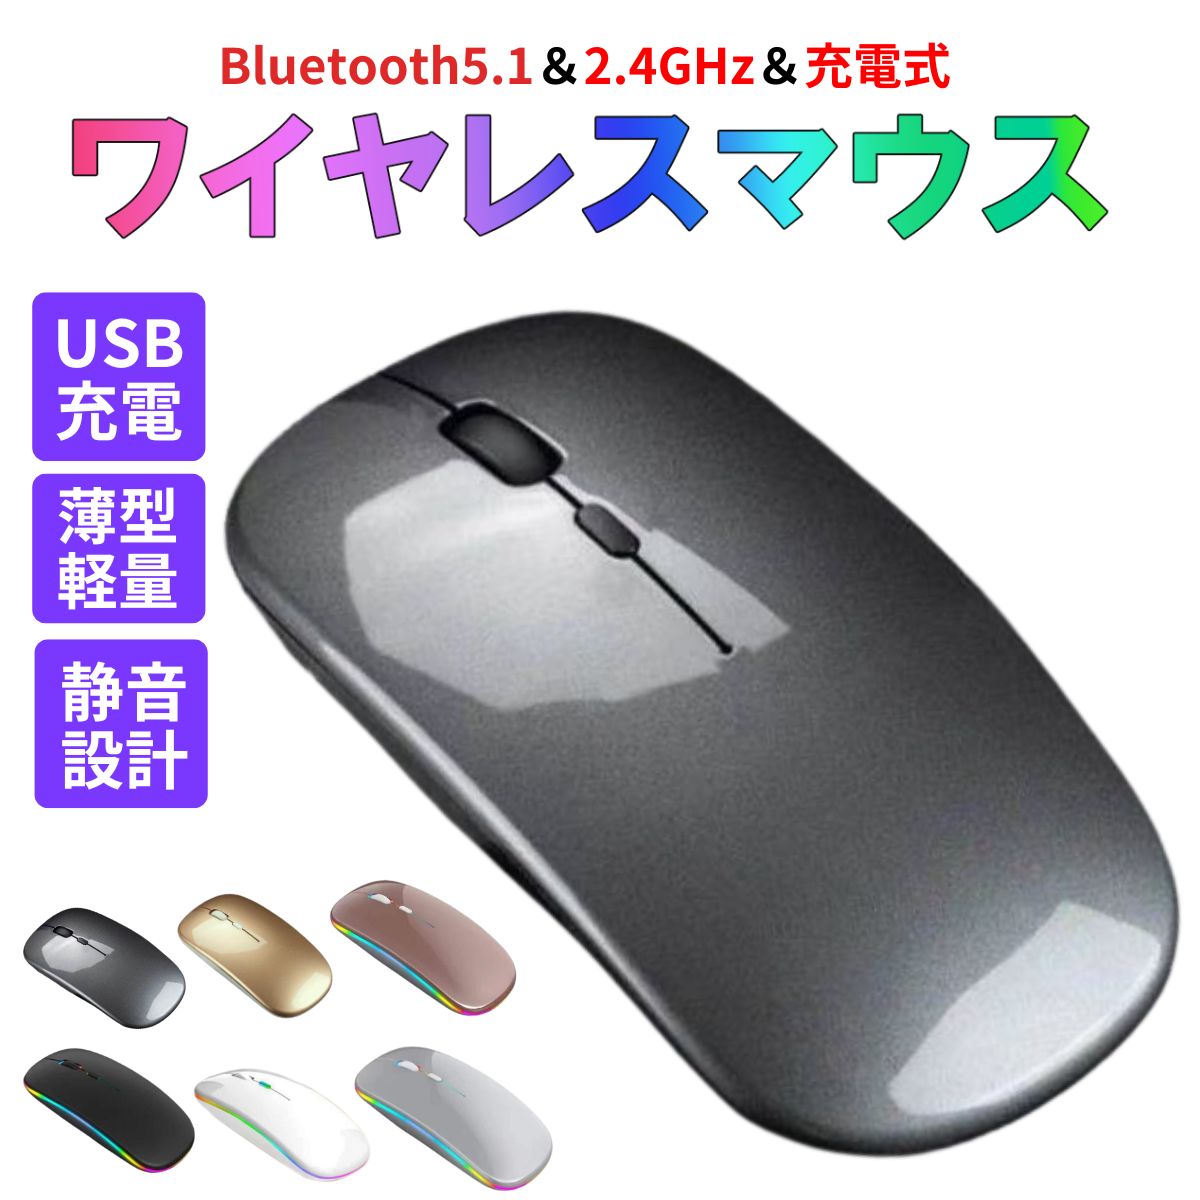  мышь bluetooth беспроводная мышь мышь беспроводной bluetooth мышь беспроводной мышь Bluetooth мышь беспроводная мышь bluetooth беспроводная мышь 